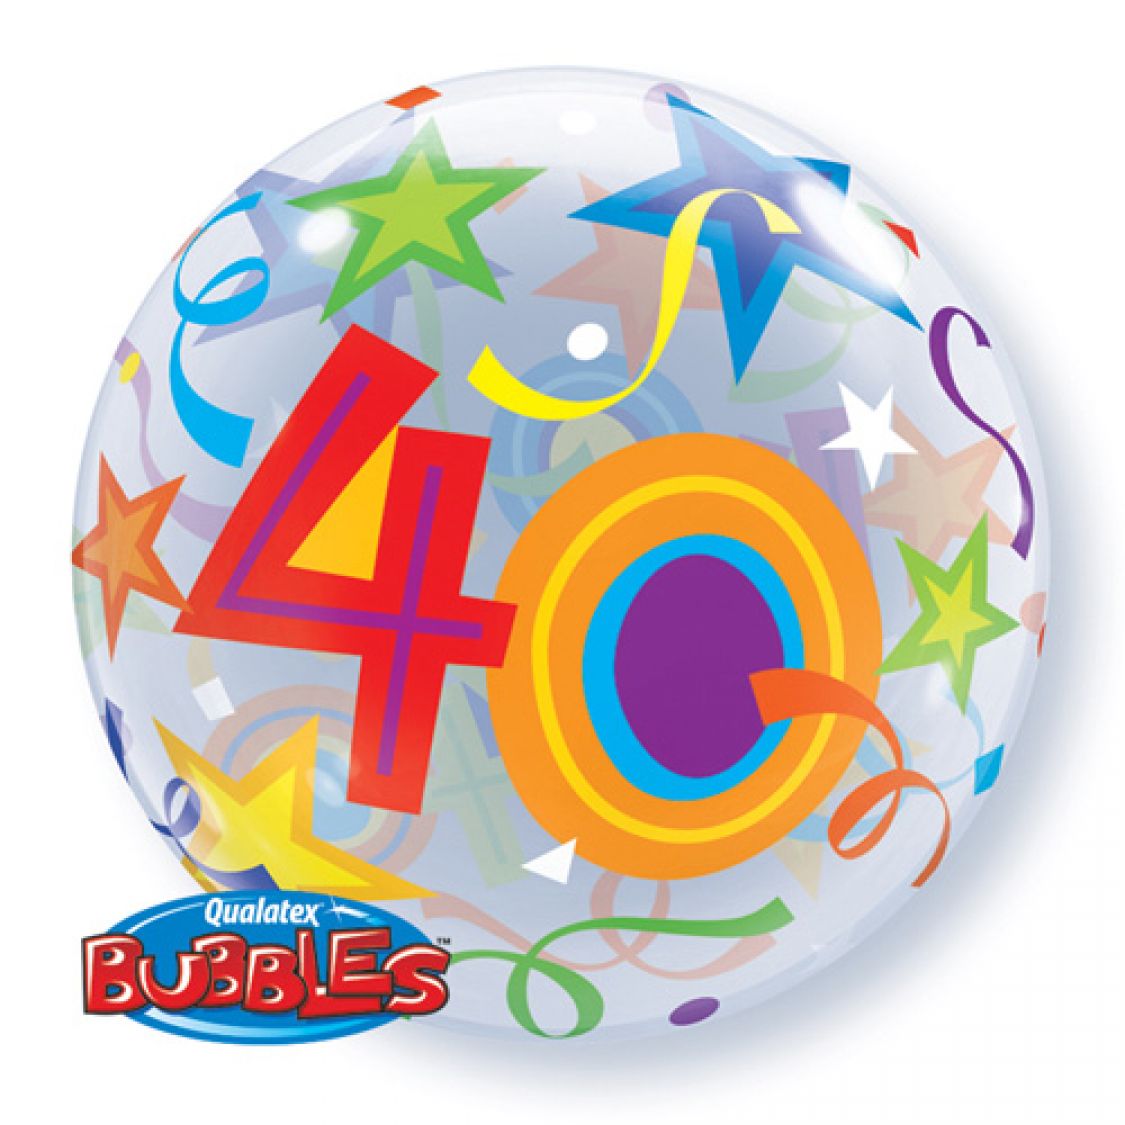 40 urodziny clipart - photo #40